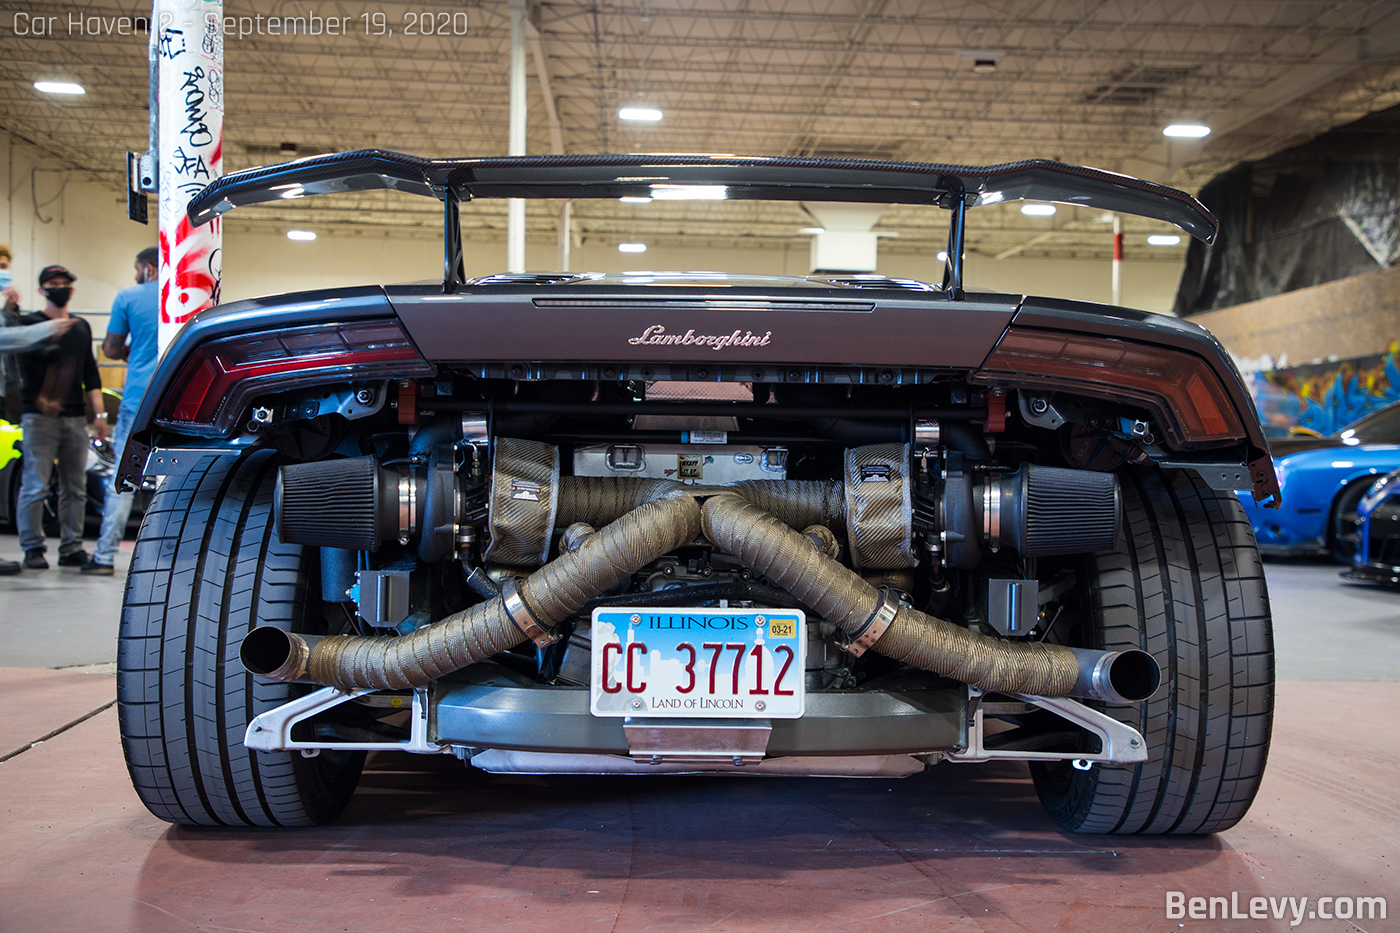 Exposed Turbo Setup on Lamborghini Huracan